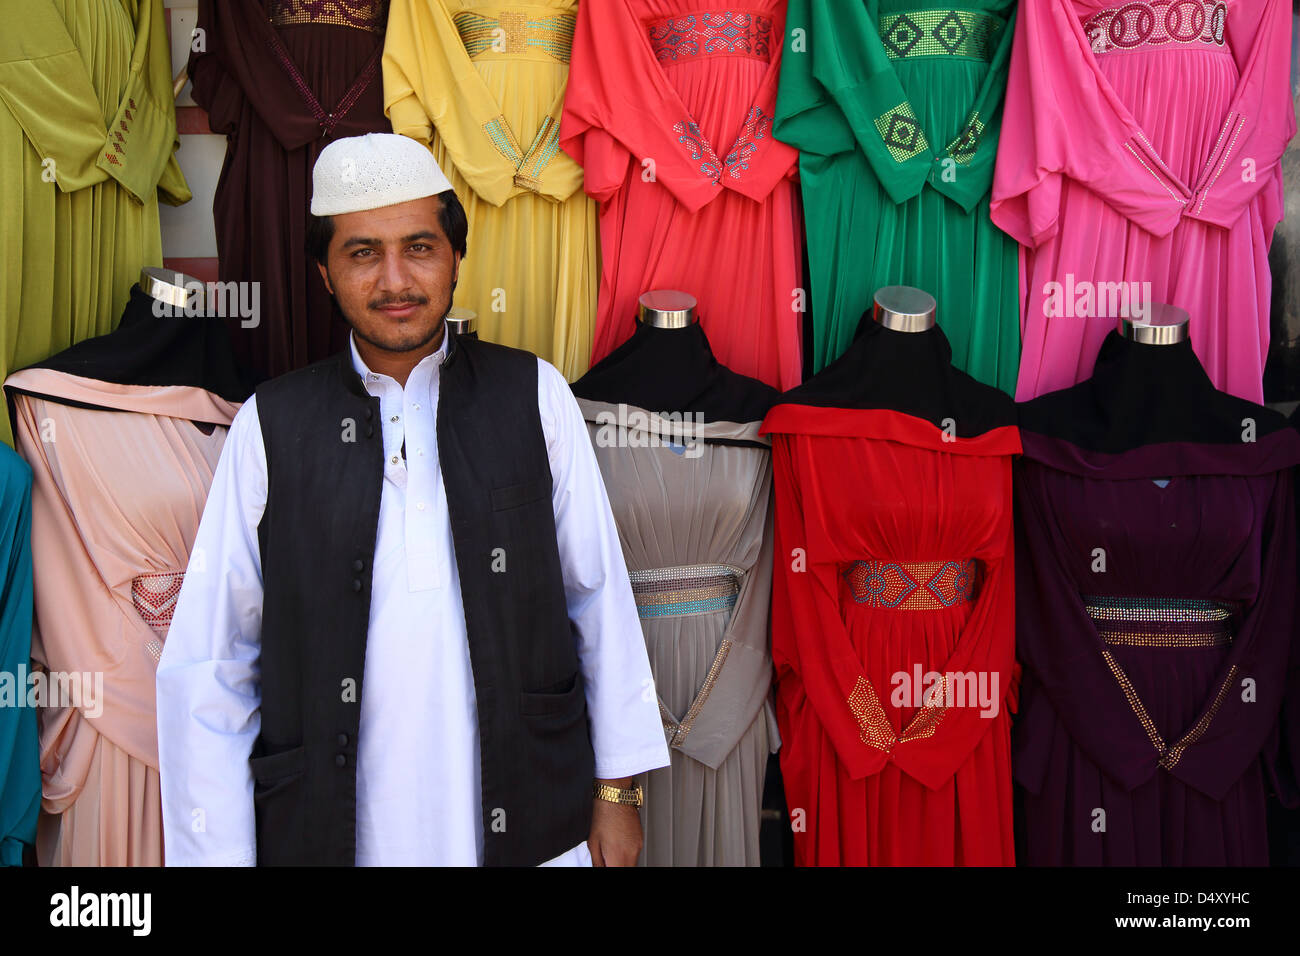 Ritratto del proprietario di un negozio di abbigliamento colorato, Dubai, Emirati Arabi Uniti Foto Stock